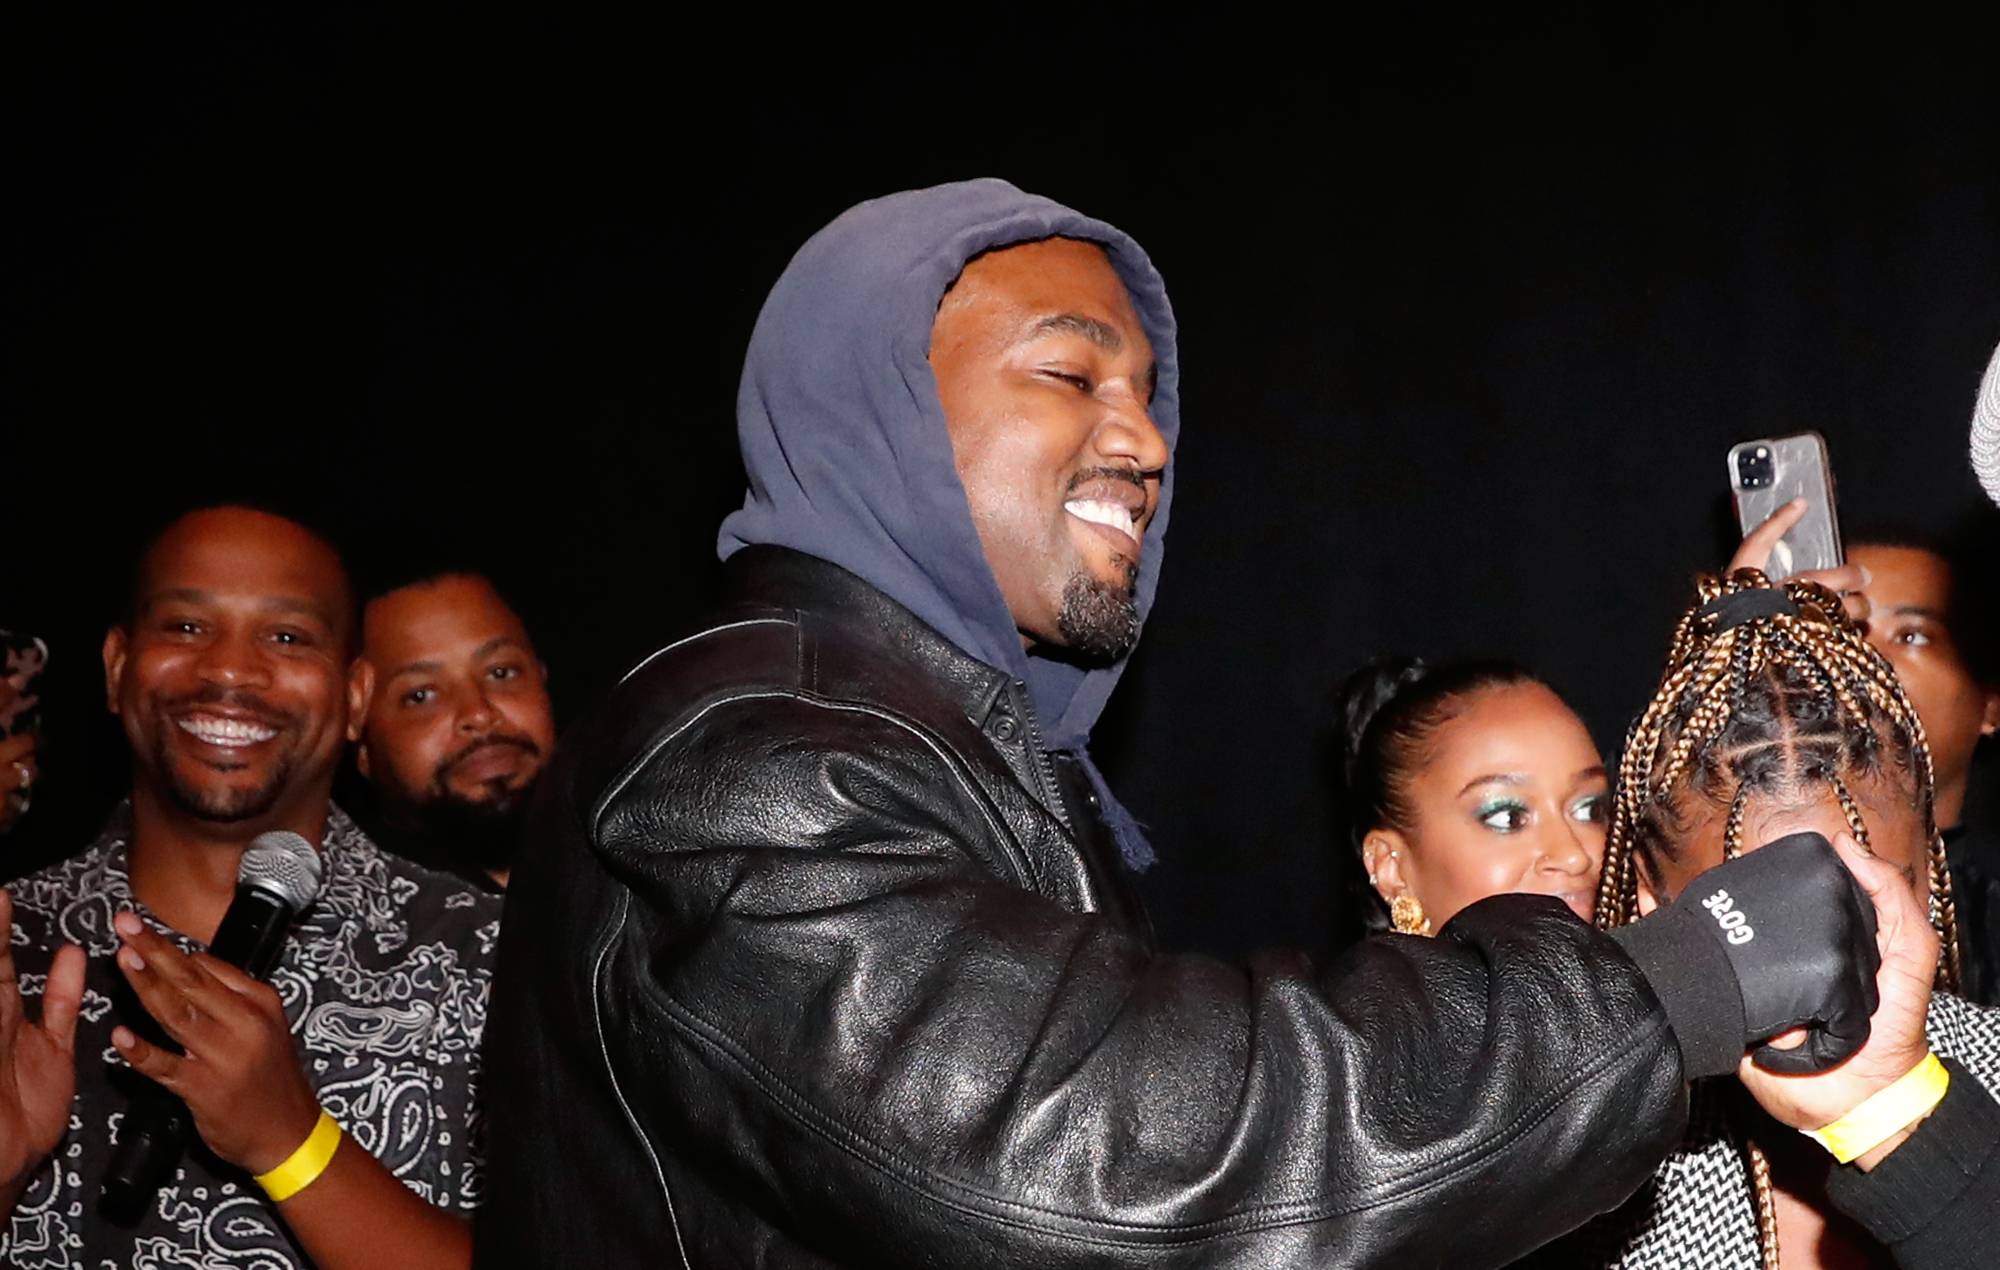 Una organización benéfica para personas sin hogar espera que Kanye West sea "una fuerza instrumental" en su nuevo proyecto